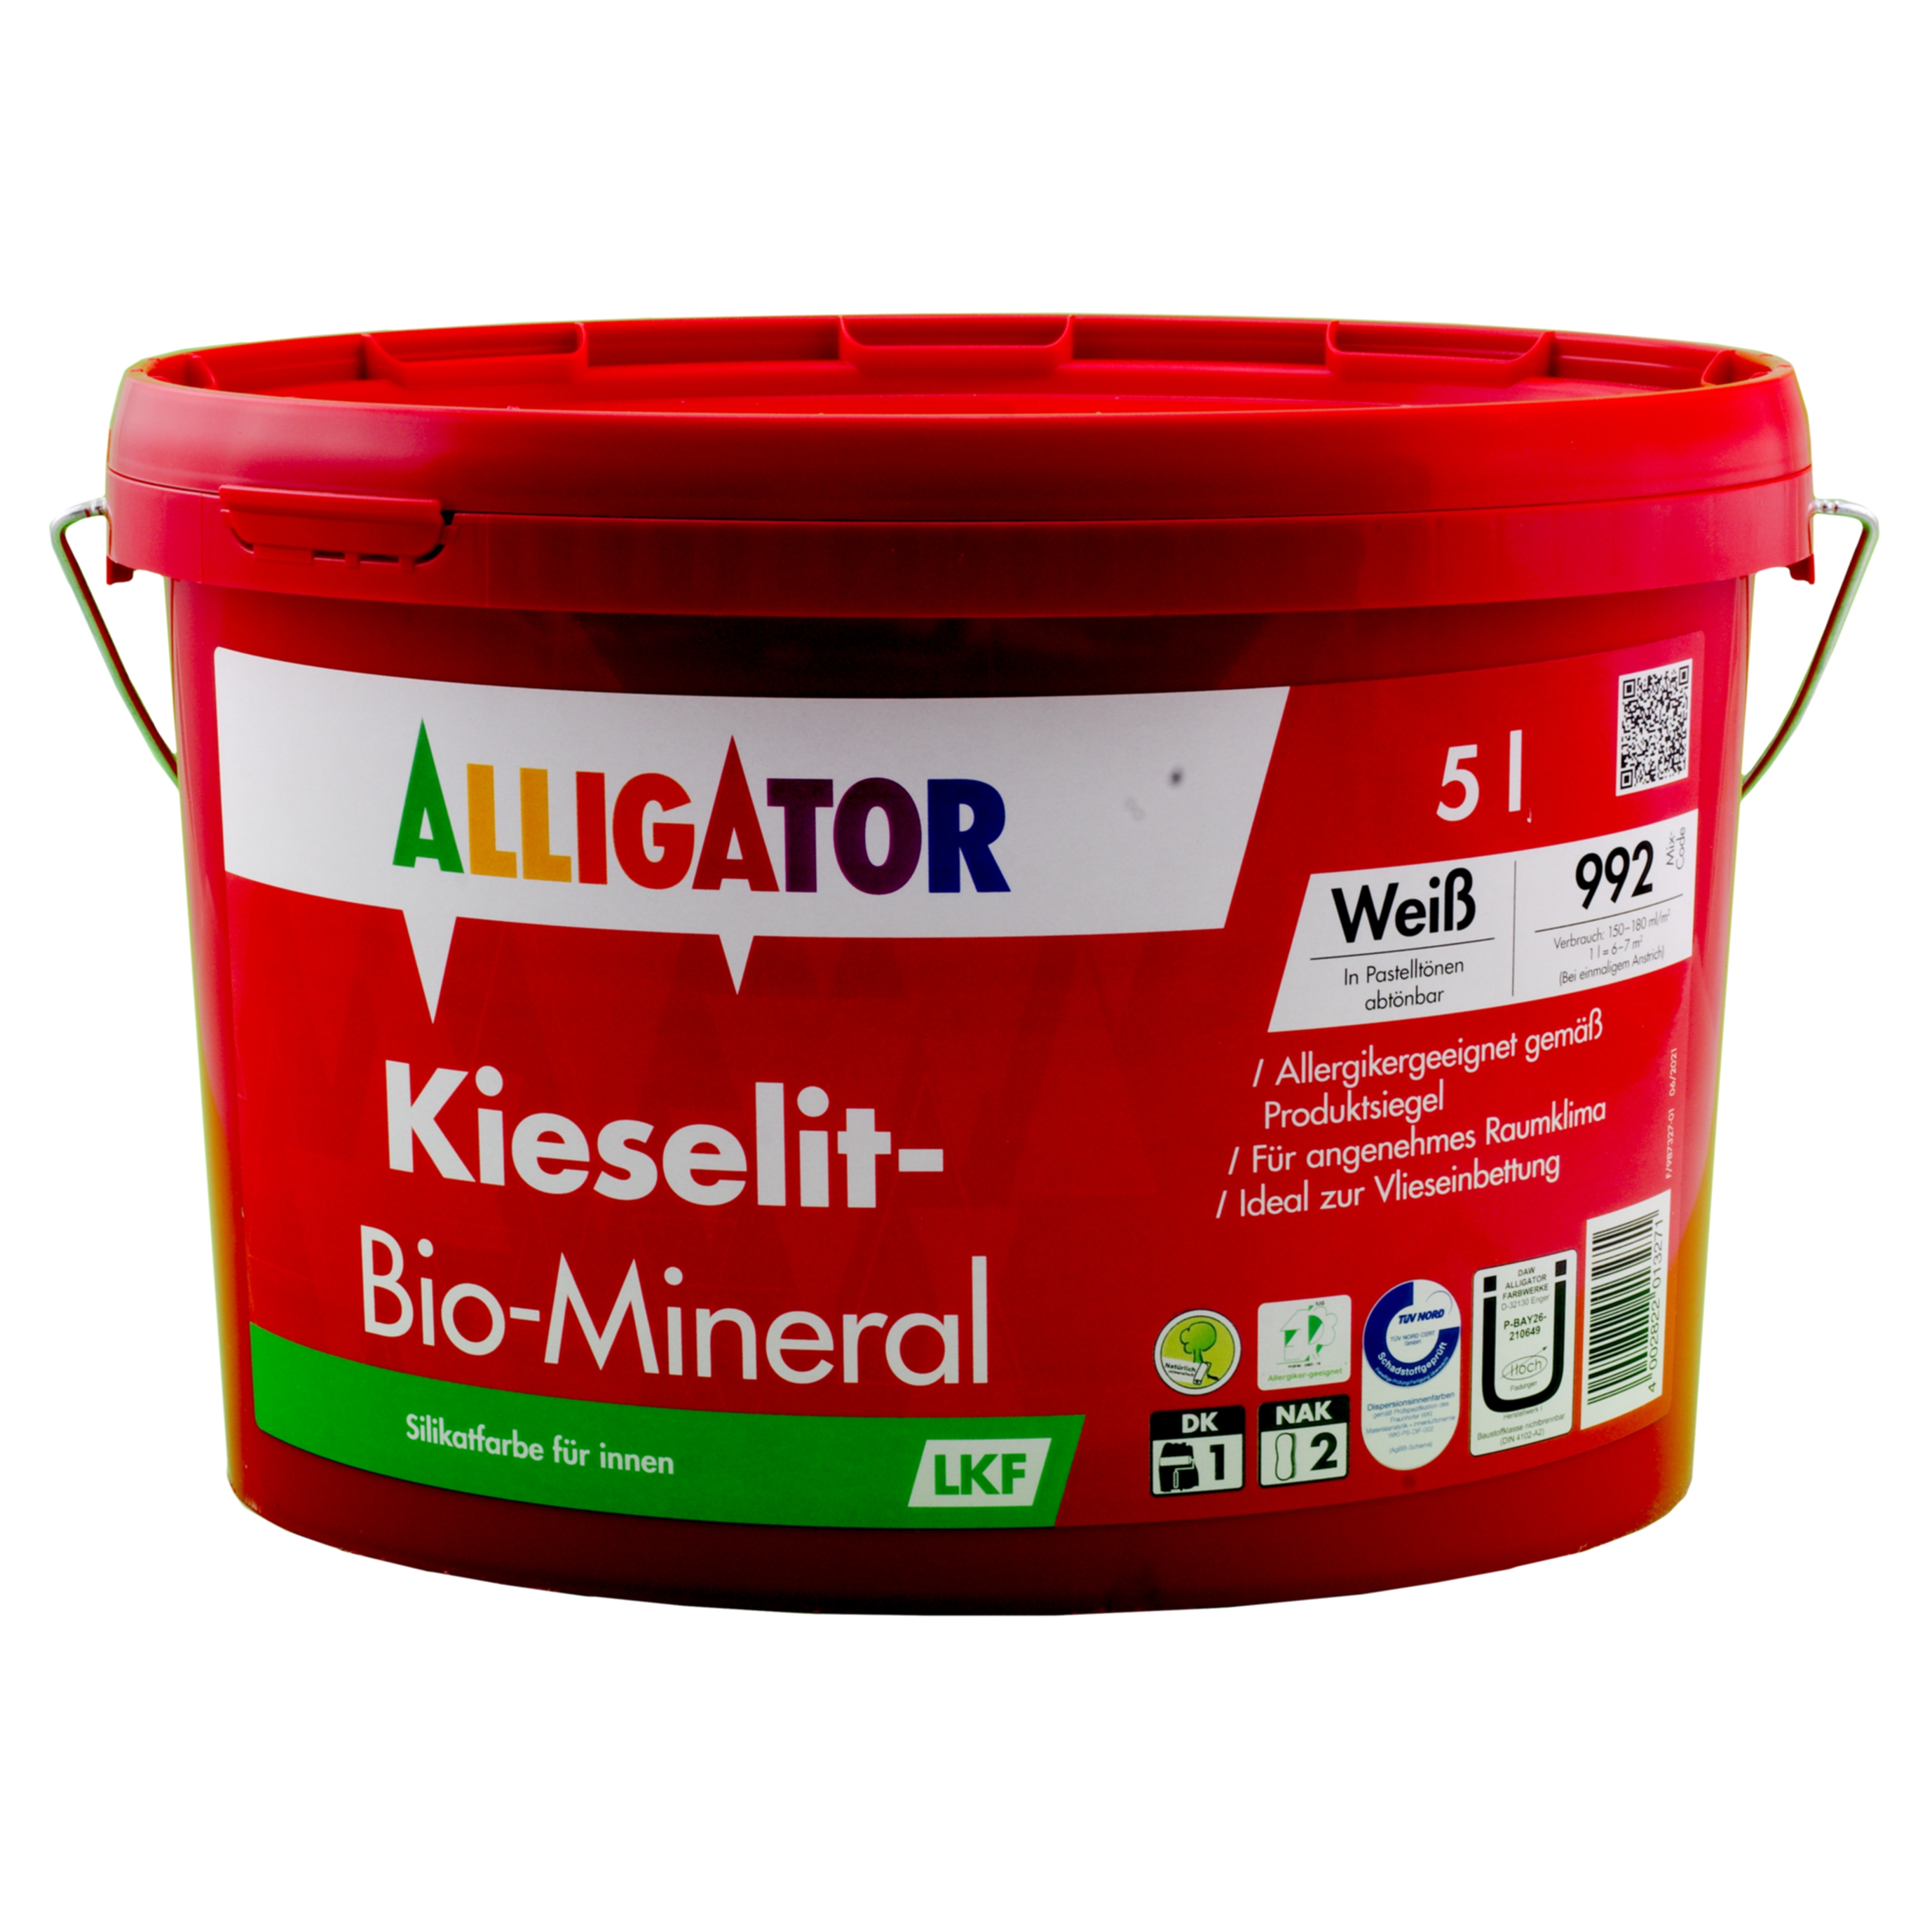 Alligator Kieselit-Bio-Mineral LKF   5,0 ltr. weiß silikat